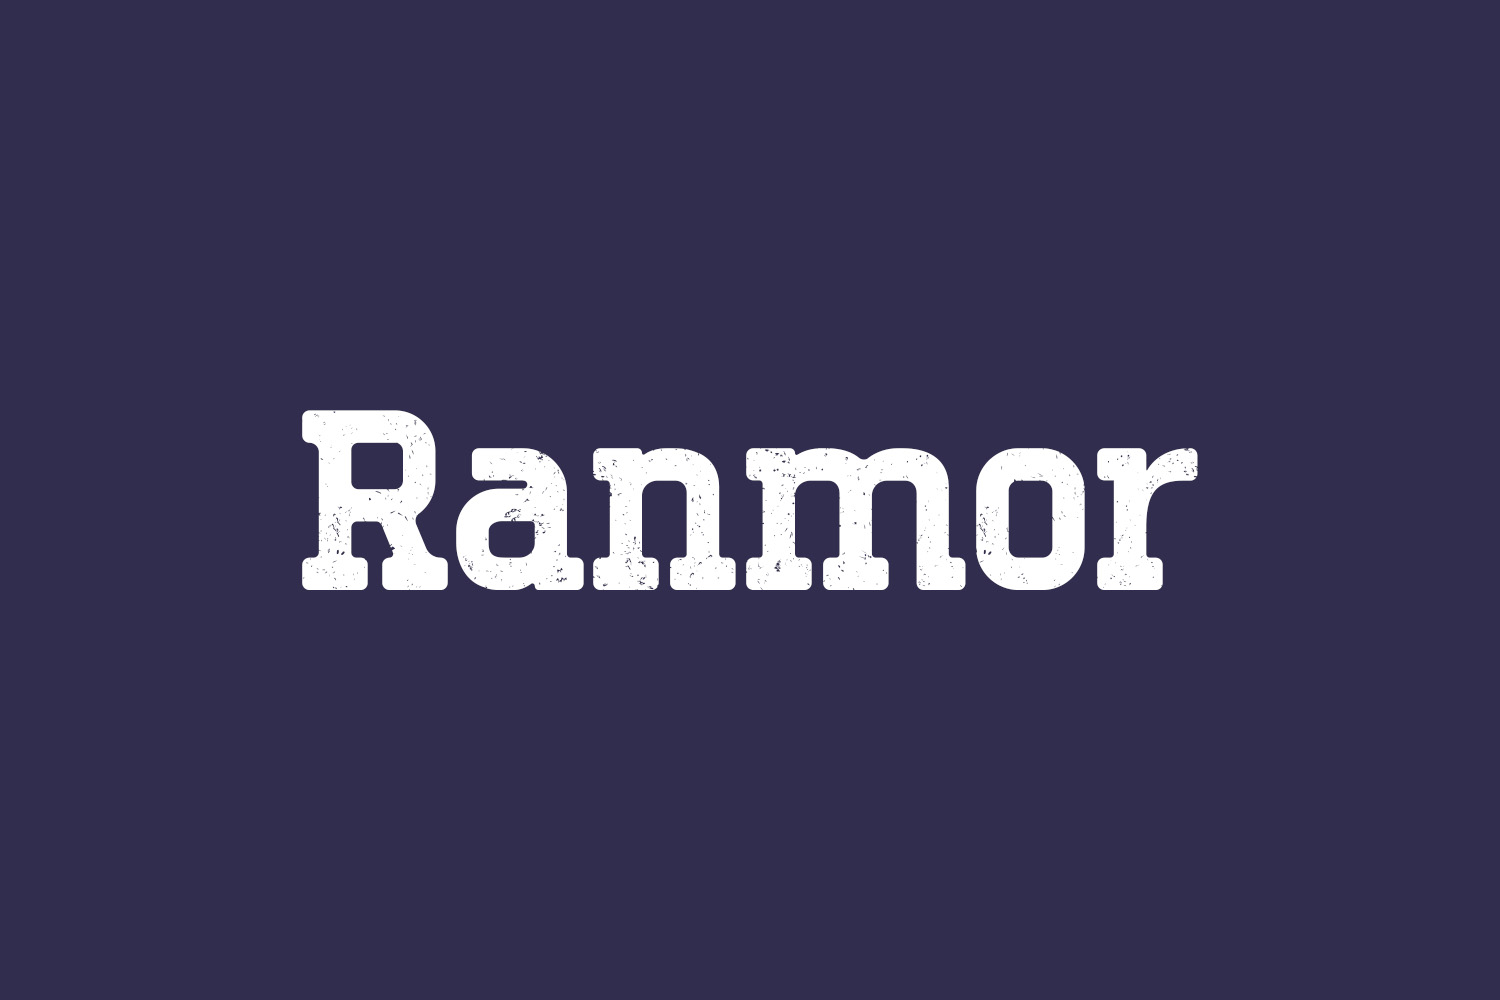 Ranmor Free Font